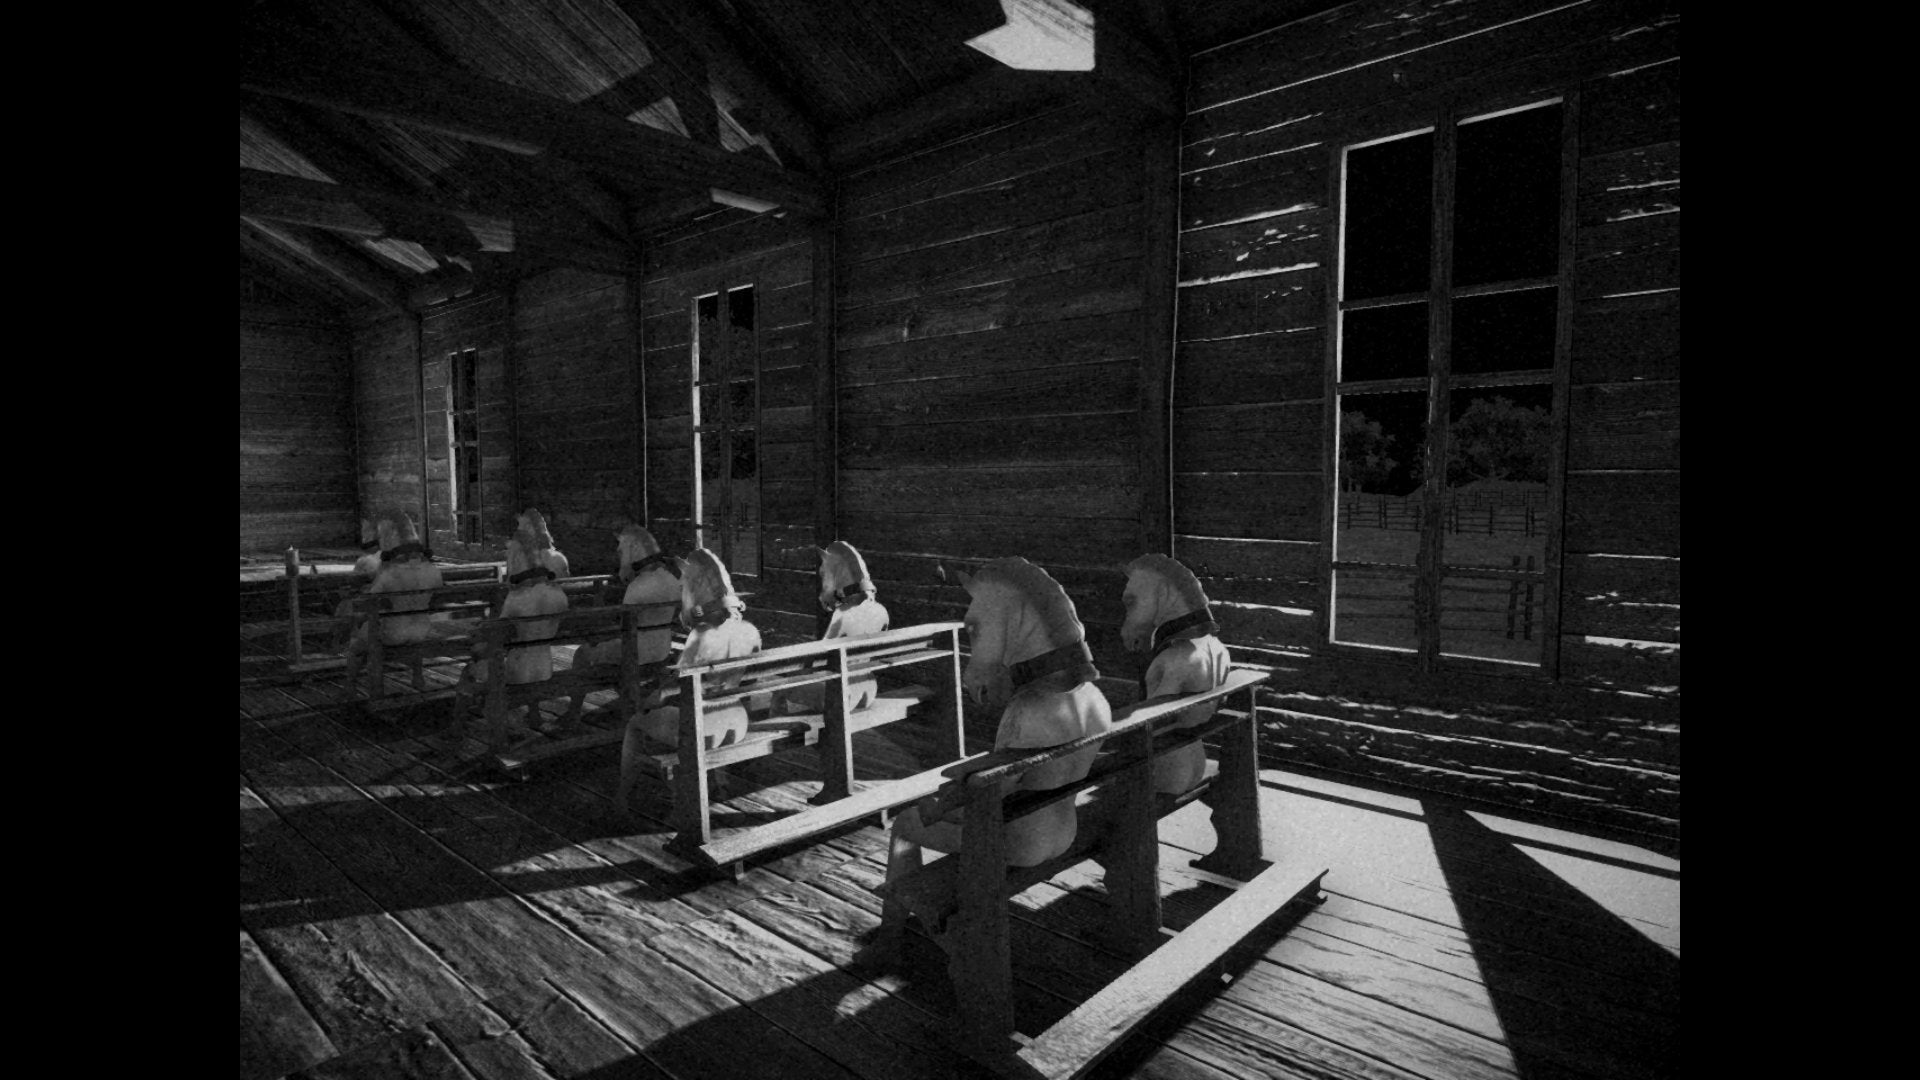 Une image granuleuse en noir et blanc montrant ce qui semble être l'intérieur d'une église en bois, où des rangées de petites chaises sont occupées par des personnes portant... des têtes de cheval.